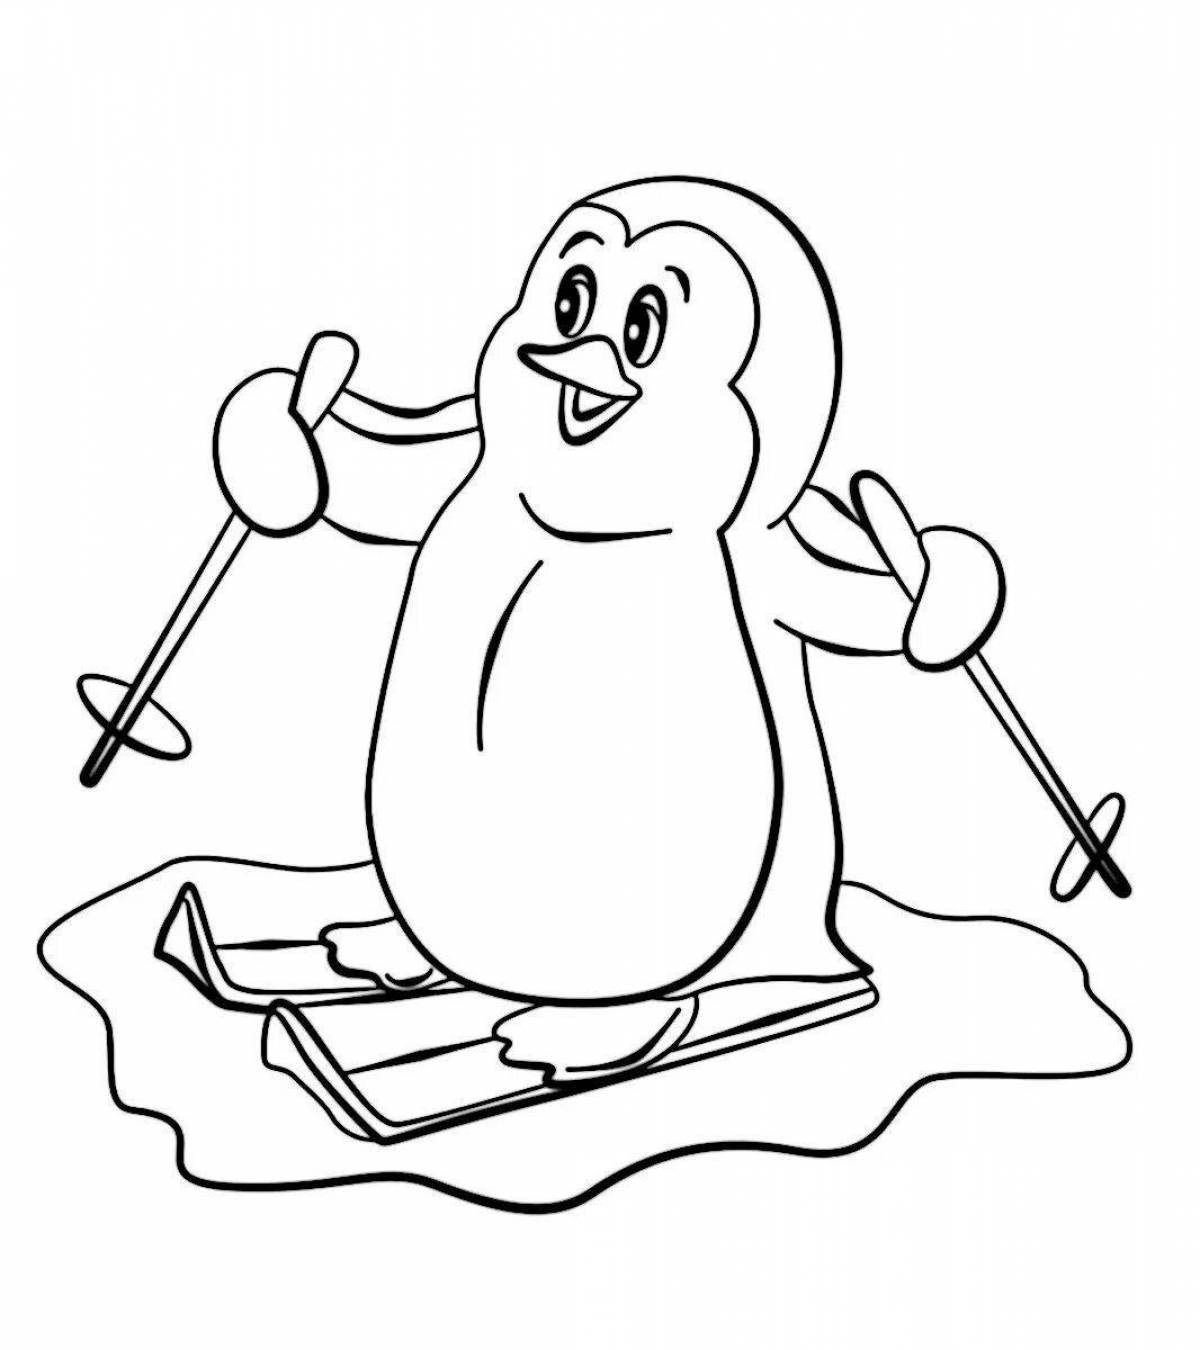 Забавная раскраска пингвин лоло